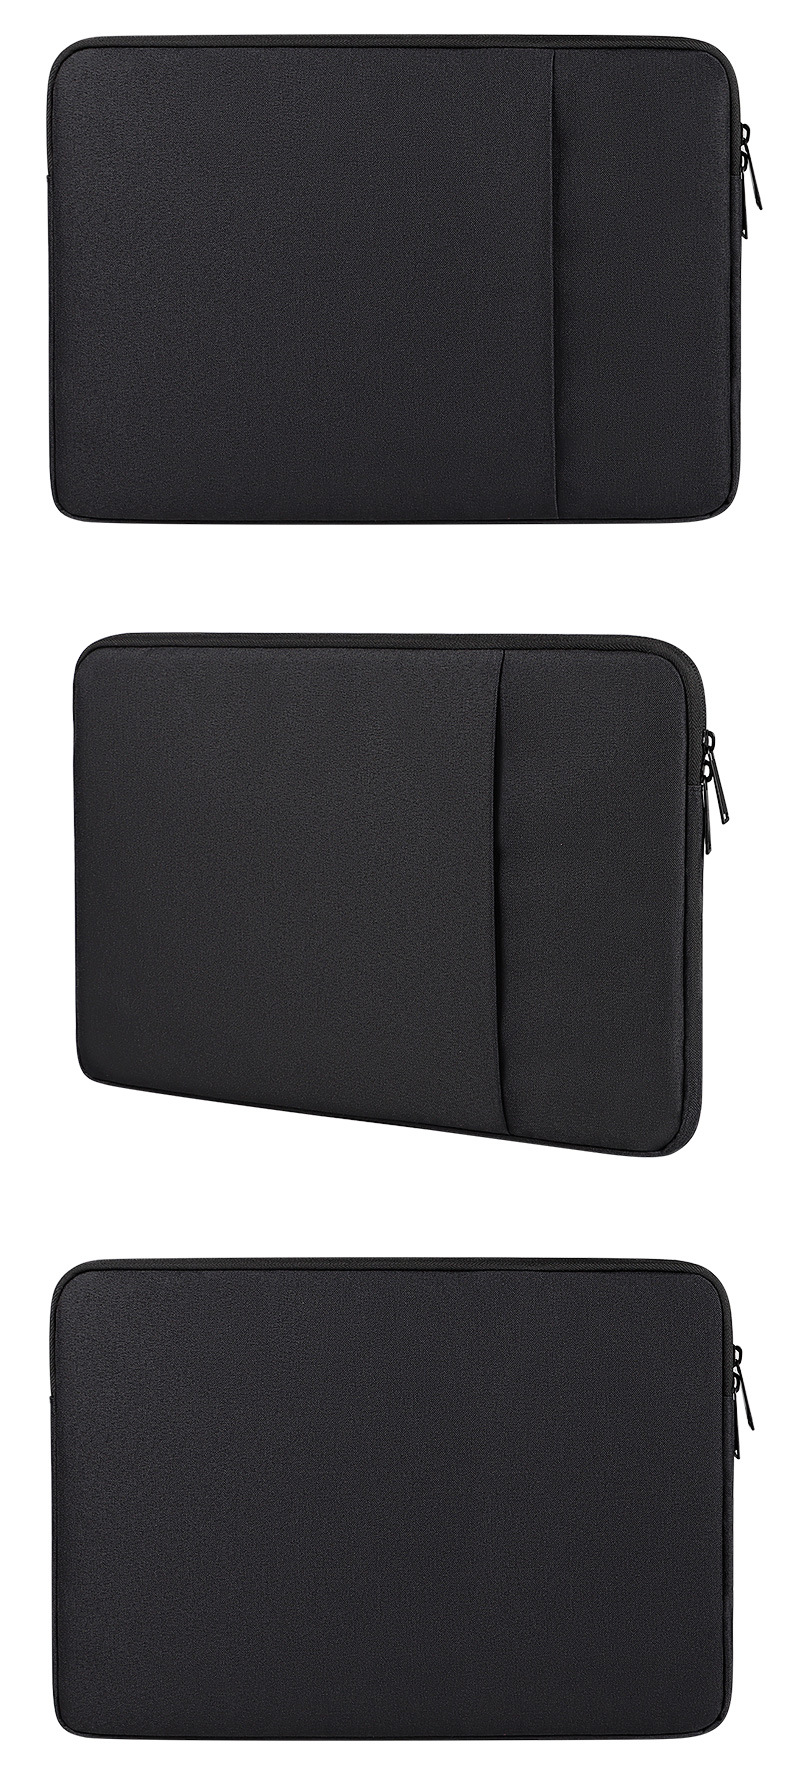 Túi chống sốc laptop dododios size 13 inch, 14 inch, 15,6 inch bền đẹp, phù hợp dành cho macbook 15inch đệm dày, vải xịn, Túi Đựng Laptop Dành Cho Macbook Air, Pro Cao Cấp Chống Sốc 2 Ngăn Hàng Chính Hãng